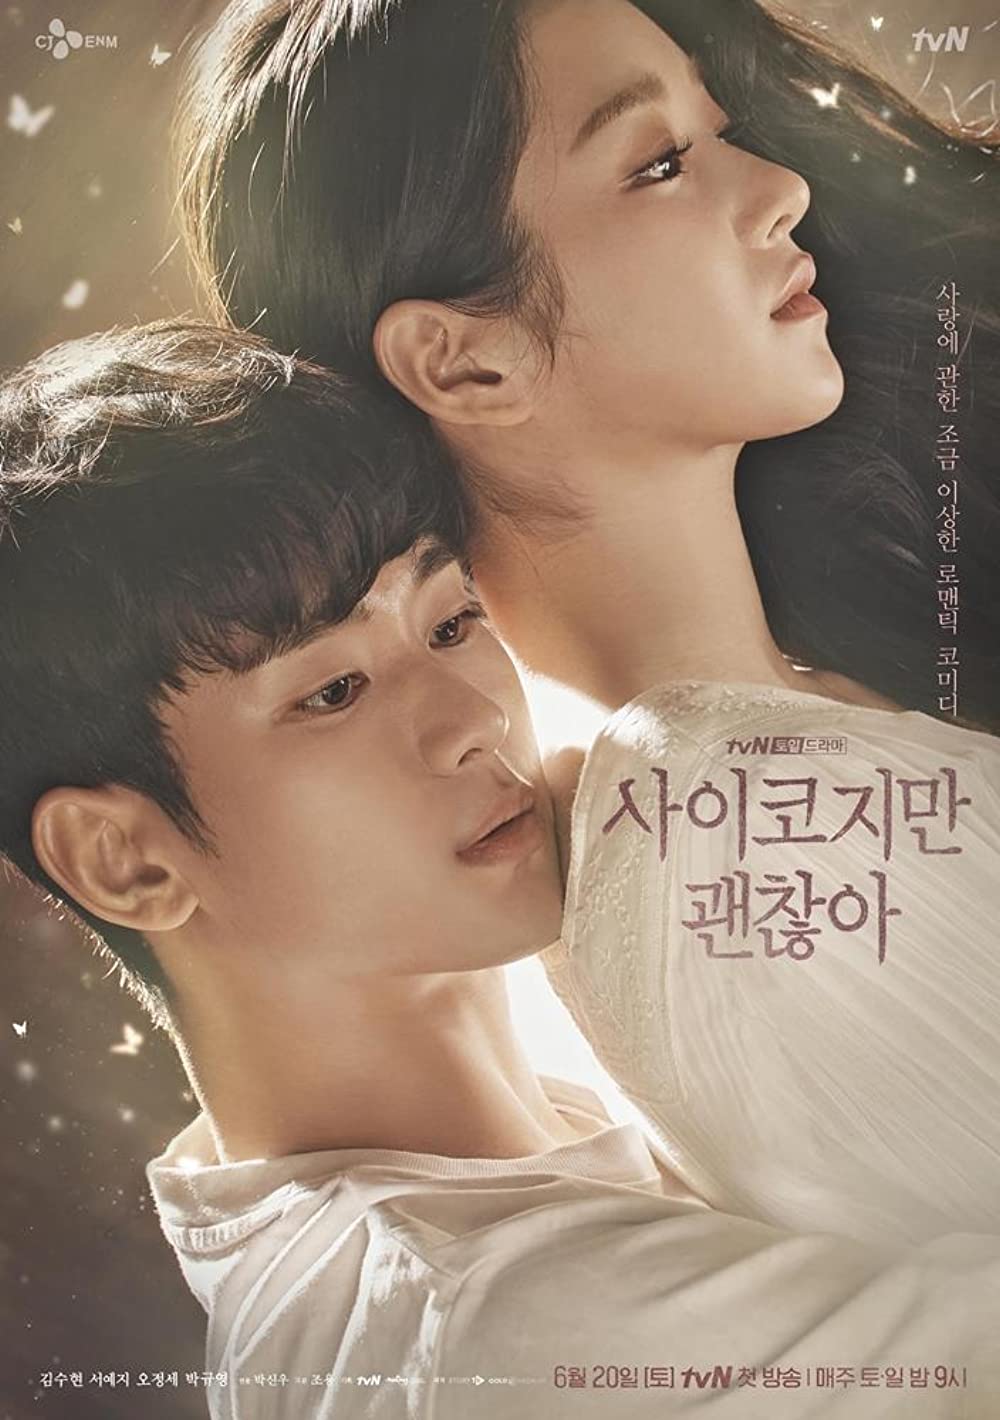 11 Drama Korea sedih romantis yang cocok ditonton saat patah hati